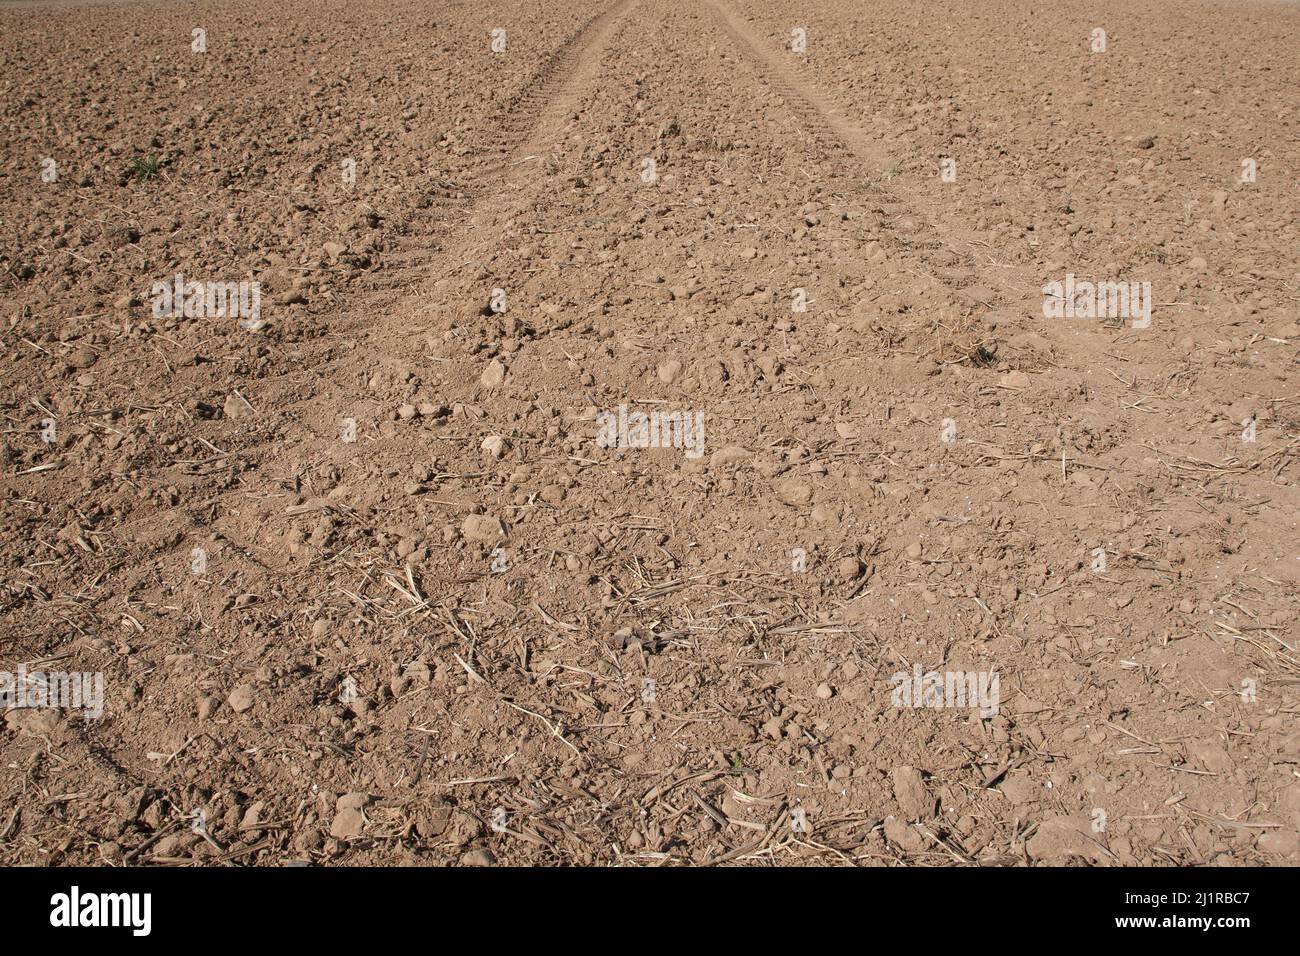 Solo le impronte dei pneumatici del trattore possono essere viste sul terreno di parchinato, e non vi è alcun segno di crescita dal seme giovane. Foto Stock